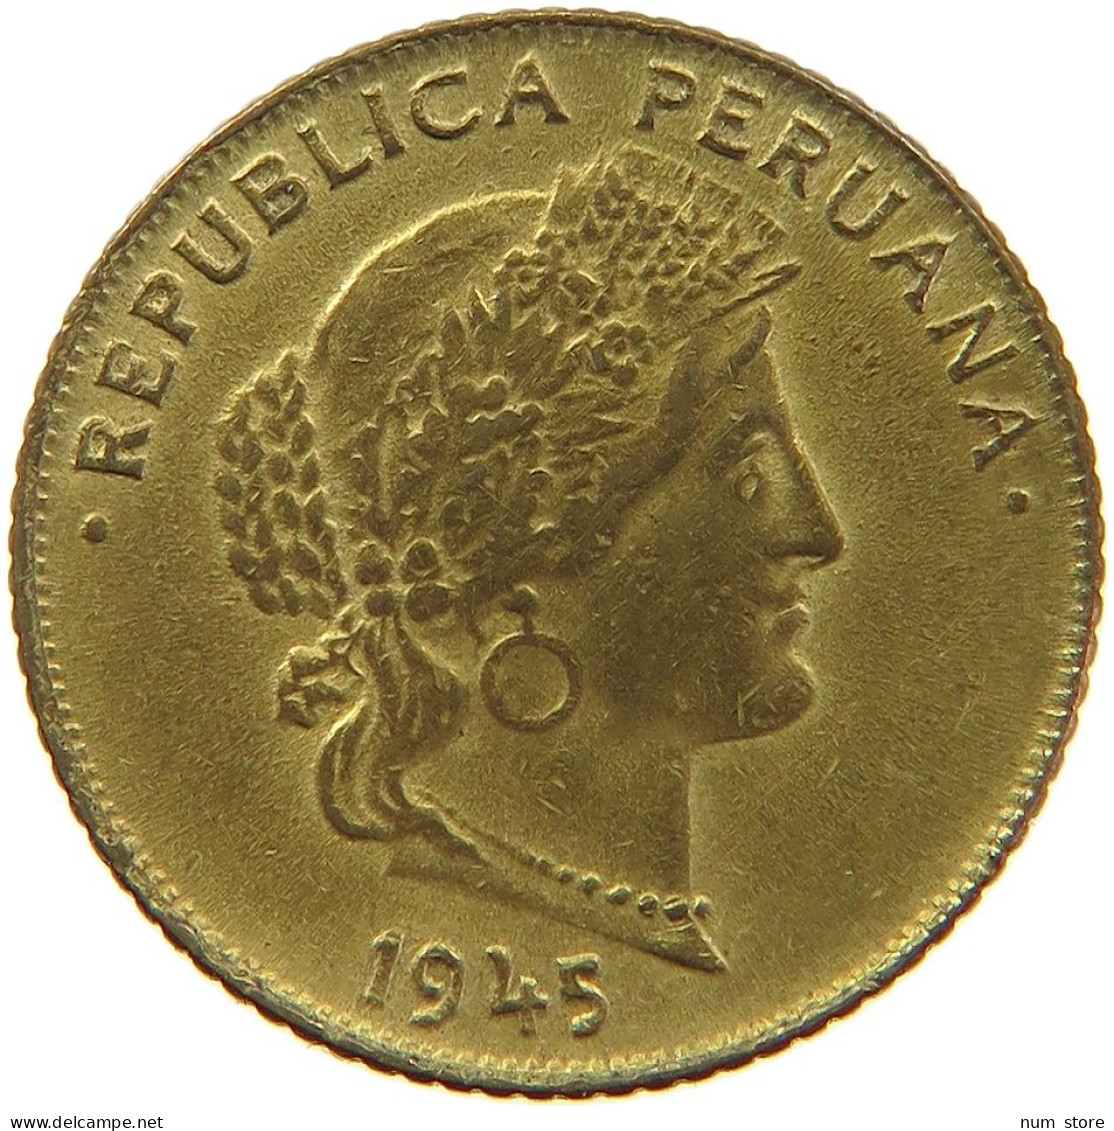 PERU 5 CENTAVOS 1945 #t030 0173 - Peru